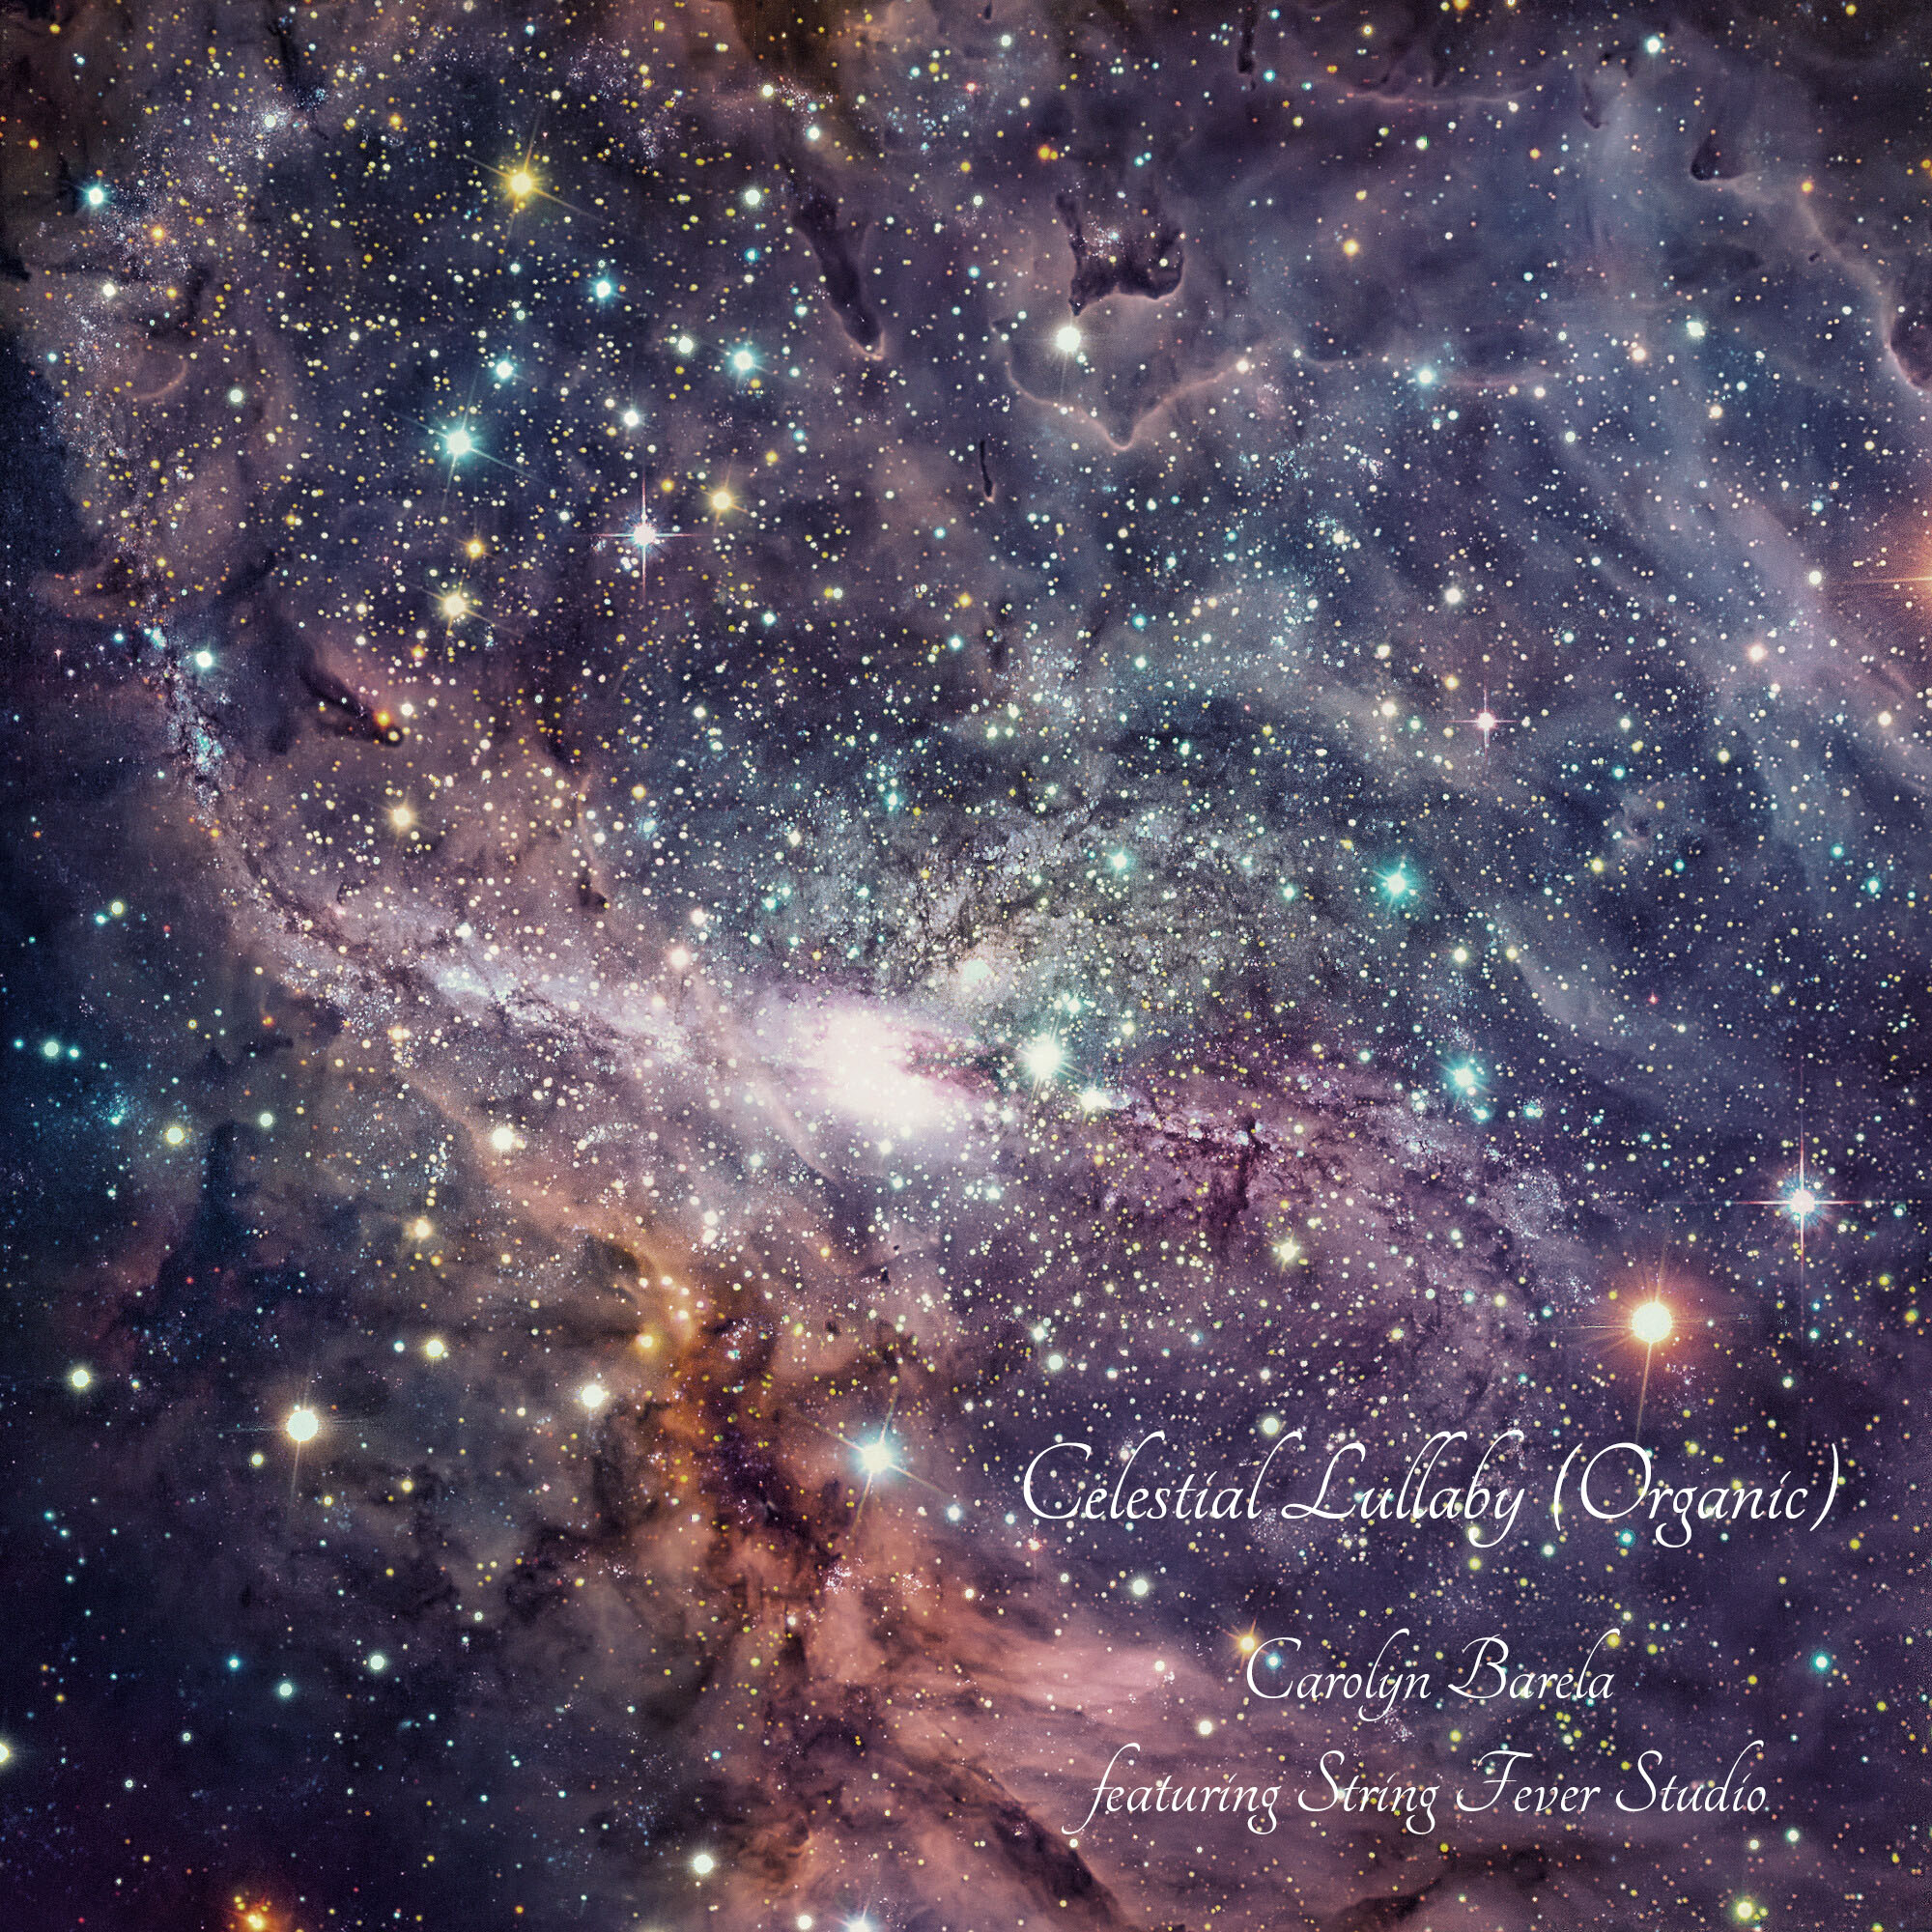 Art for Celestial Lullaby (Organic)_C Barela by Carolyn Barela ft String Fever Studio